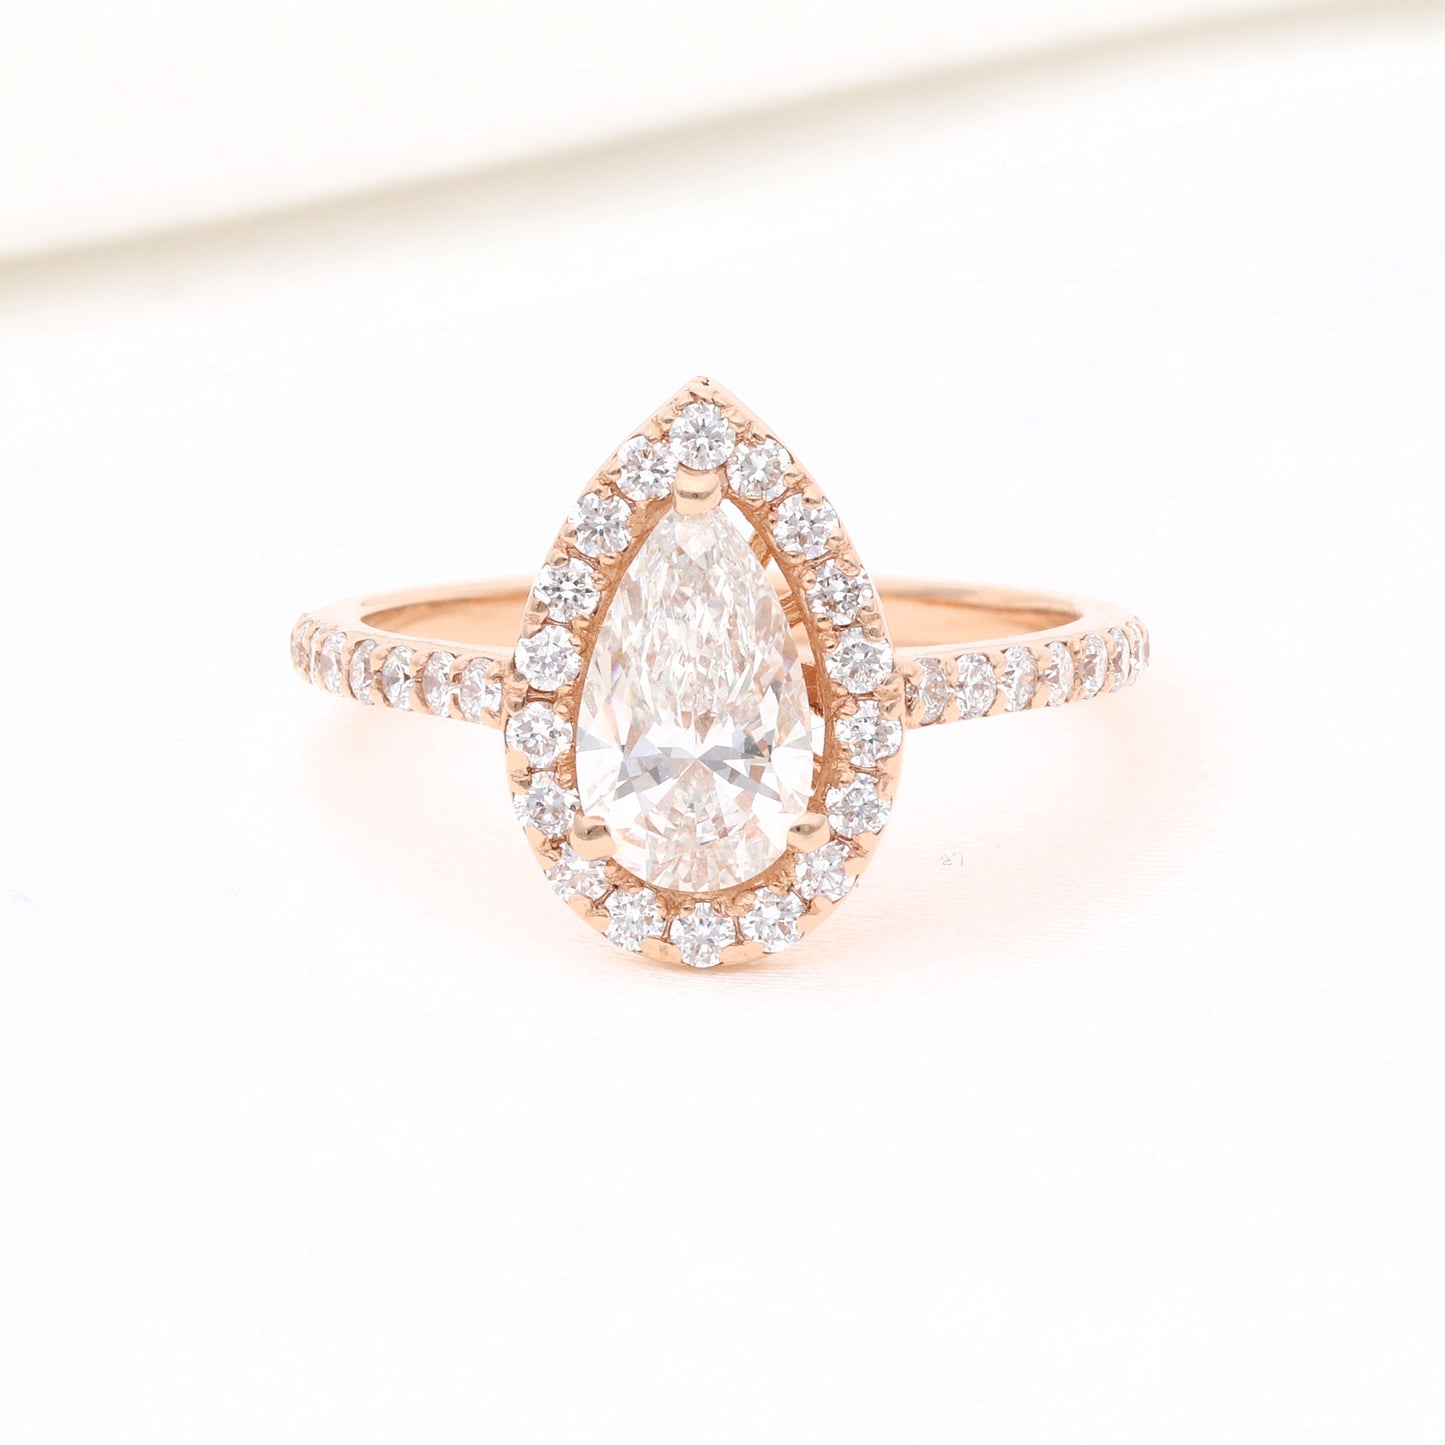 Žiedas su sintetiniais deimantais vestuviniaiziedai.lt